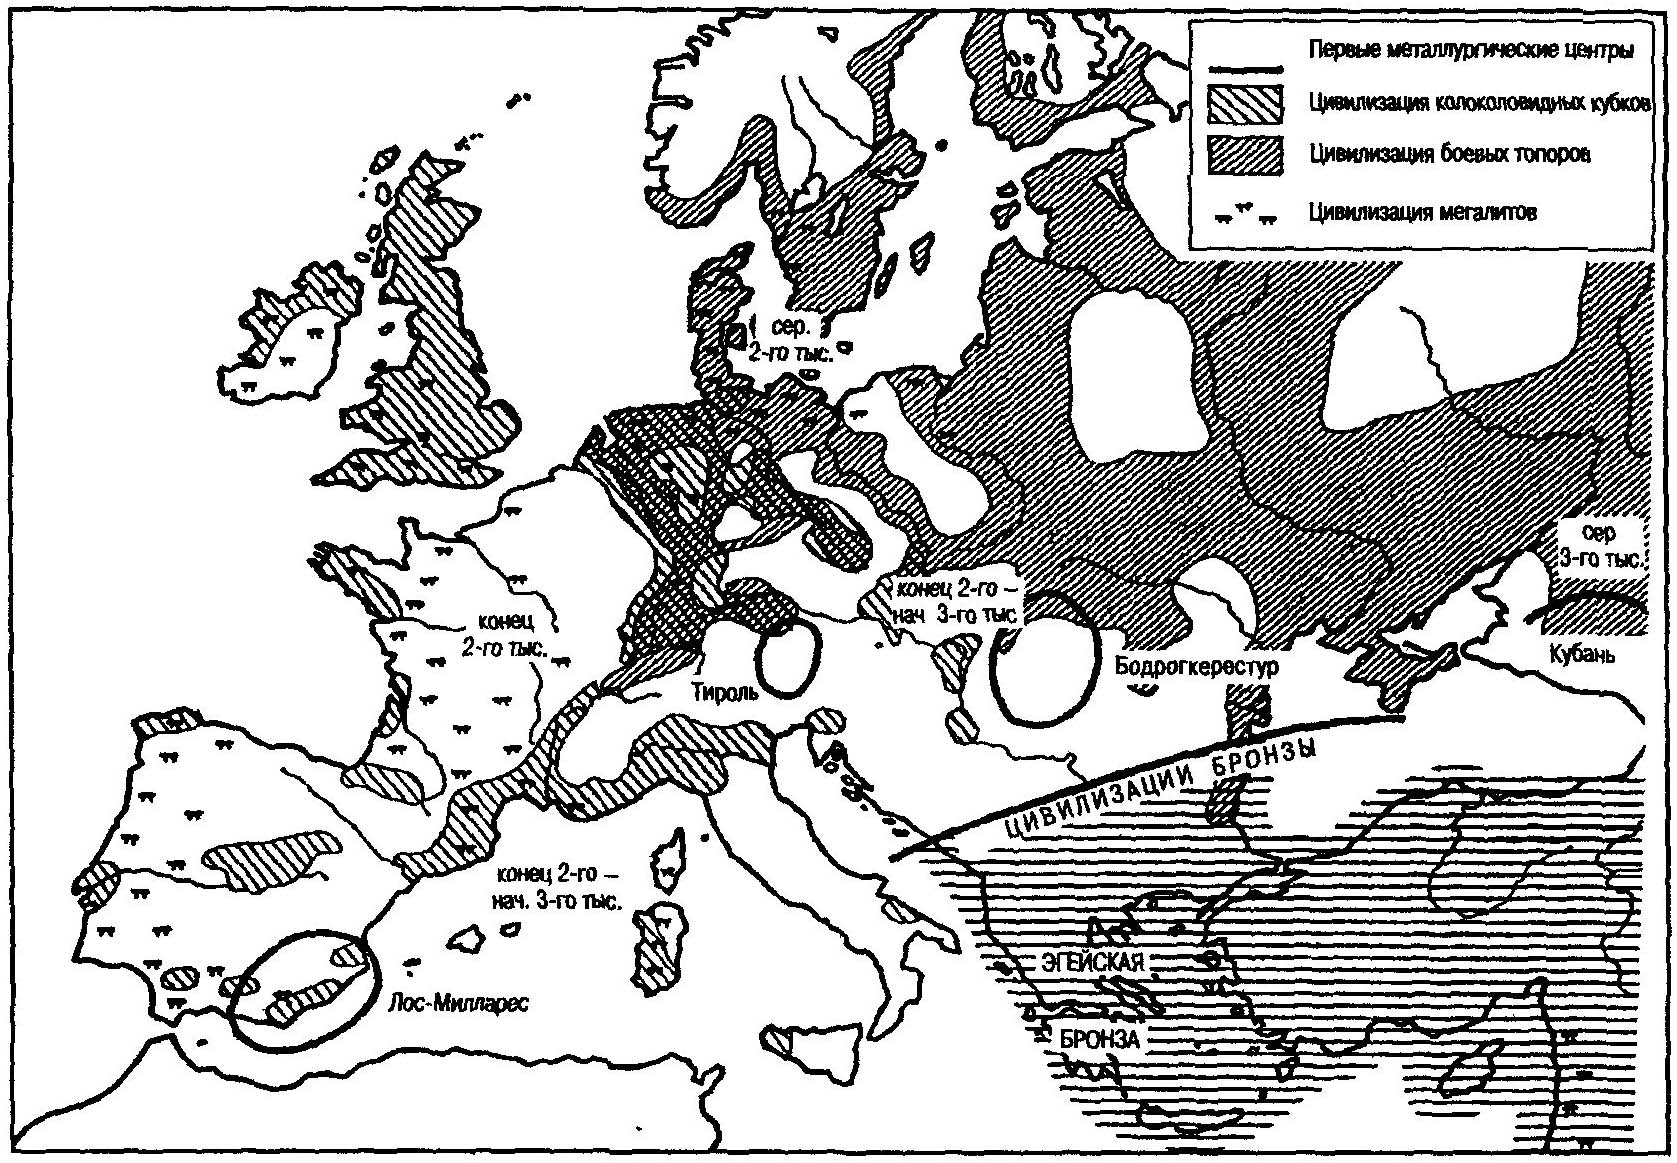 Появление металла в Европе. Халколит, зоны цивилизаций колоковидных кубков и боевых топоров